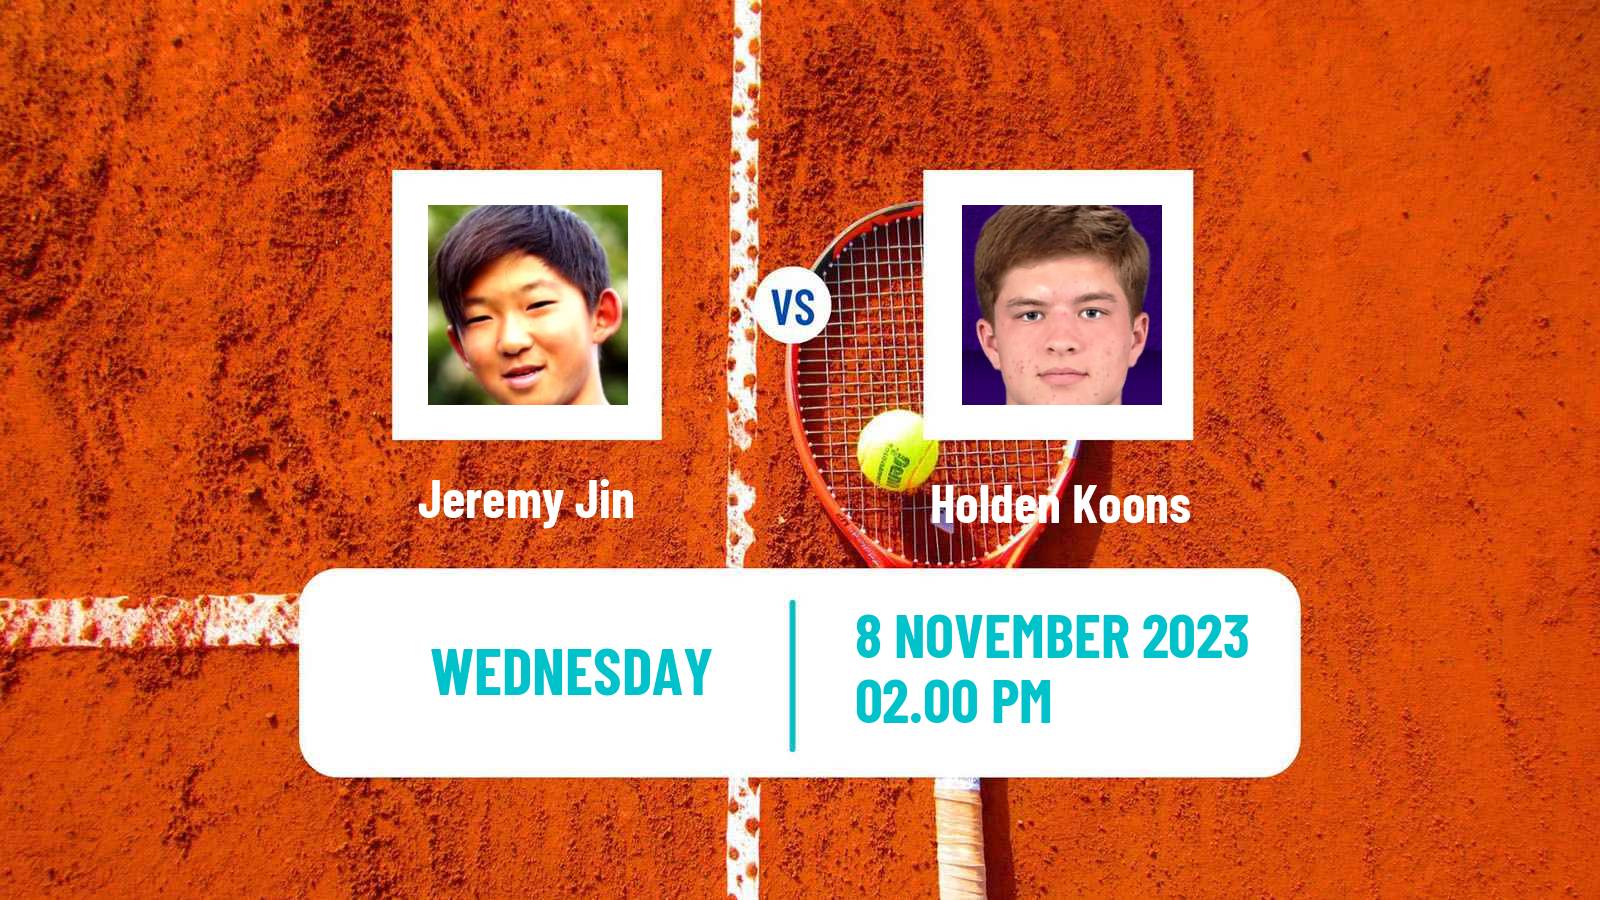 Tennis ITF M15 Winston Salem Nc Men Jeremy Jin - Holden Koons